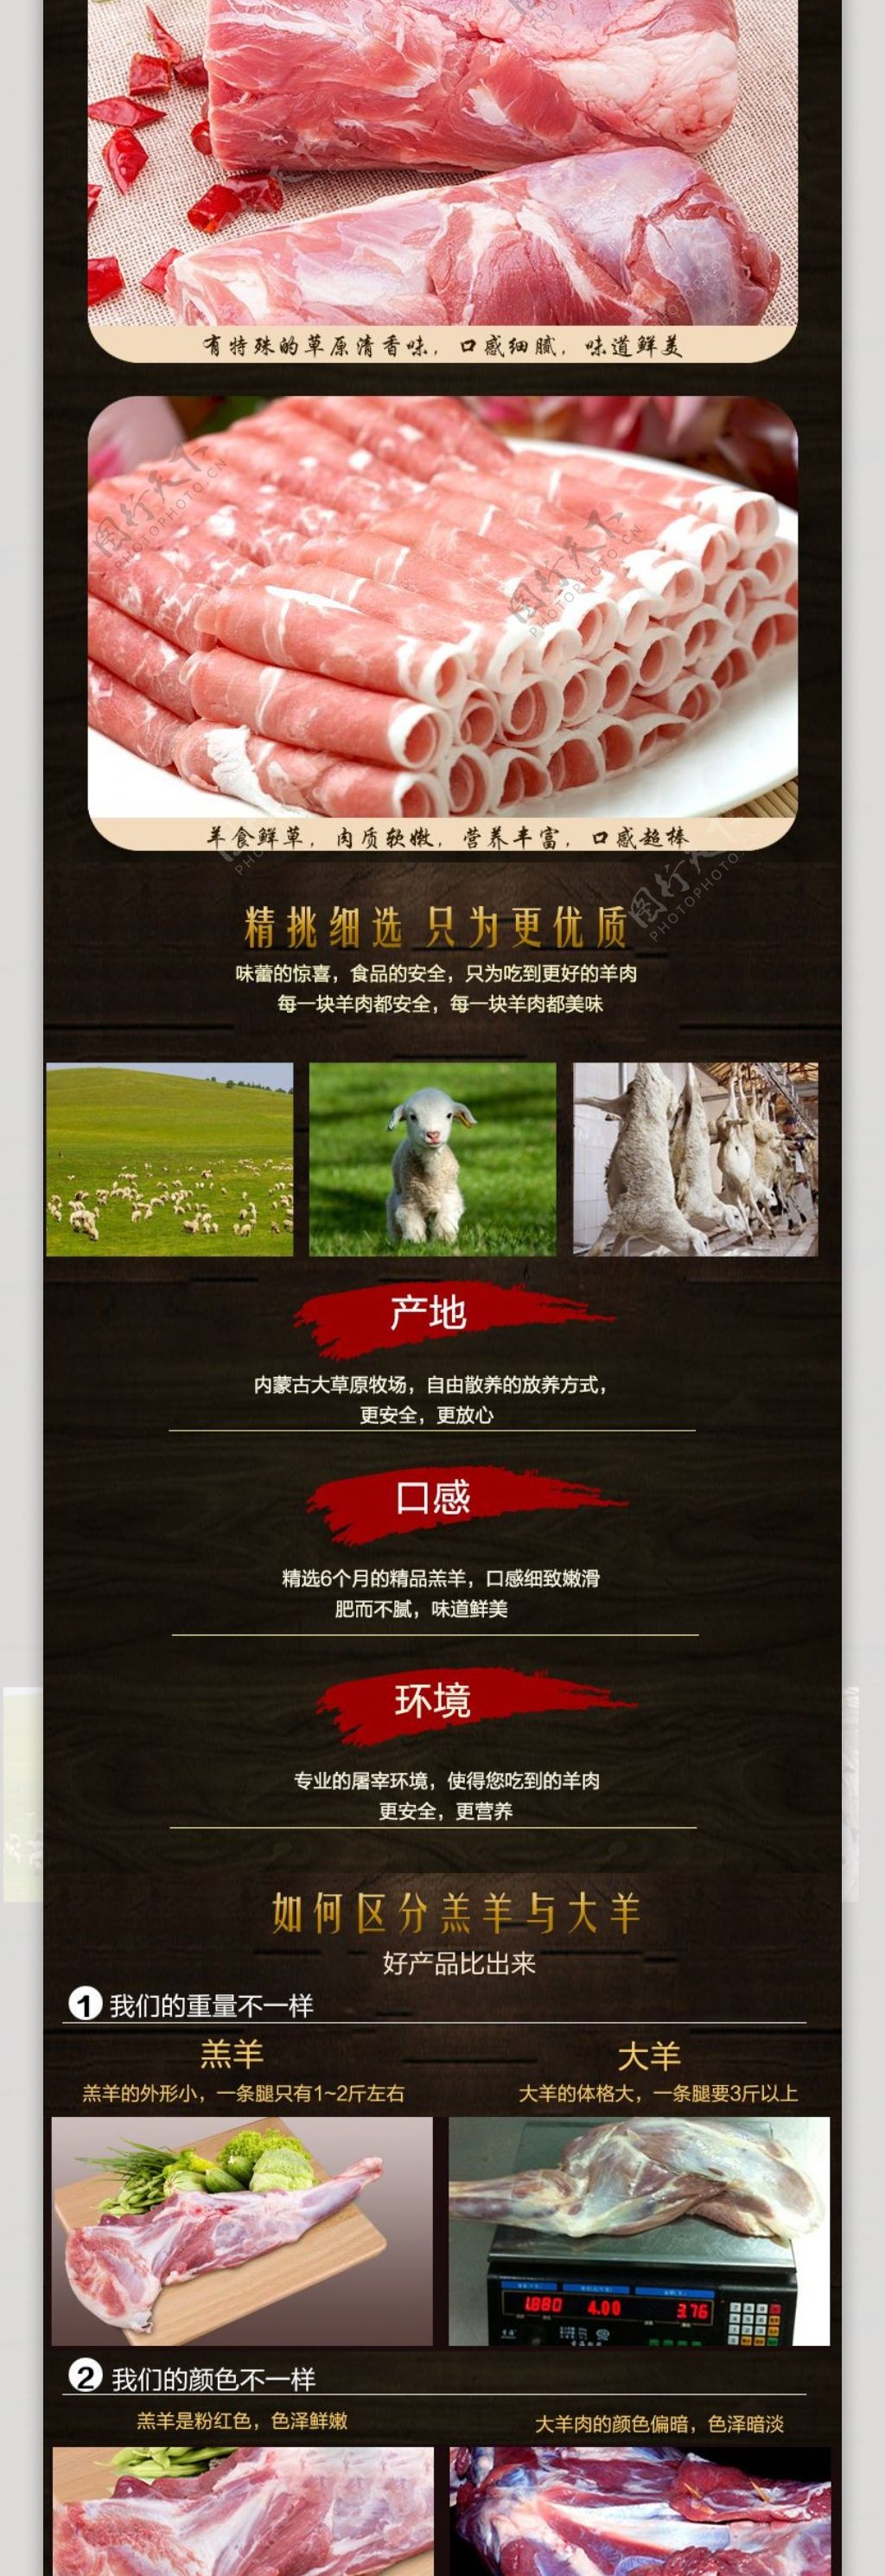 淘宝海报牛羊肉产品礼盒详情页设计